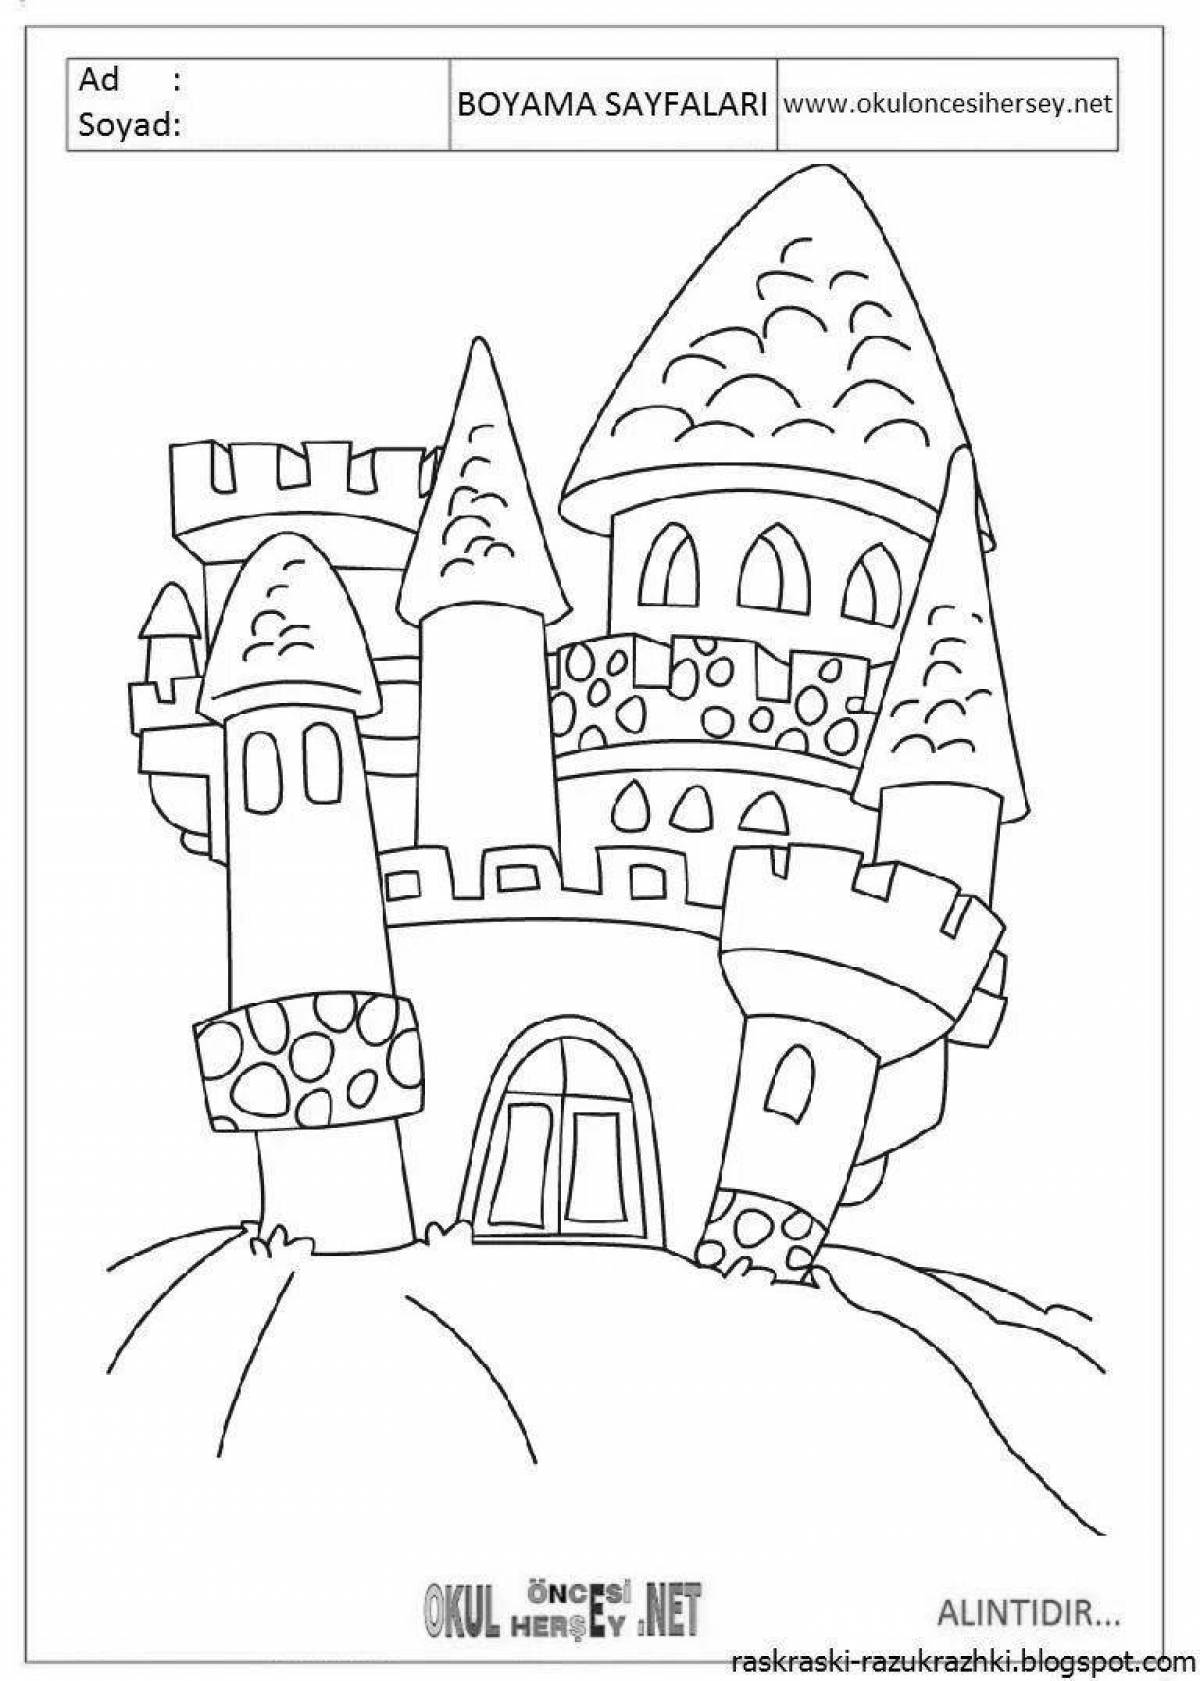 Exquisite magic castle coloring book